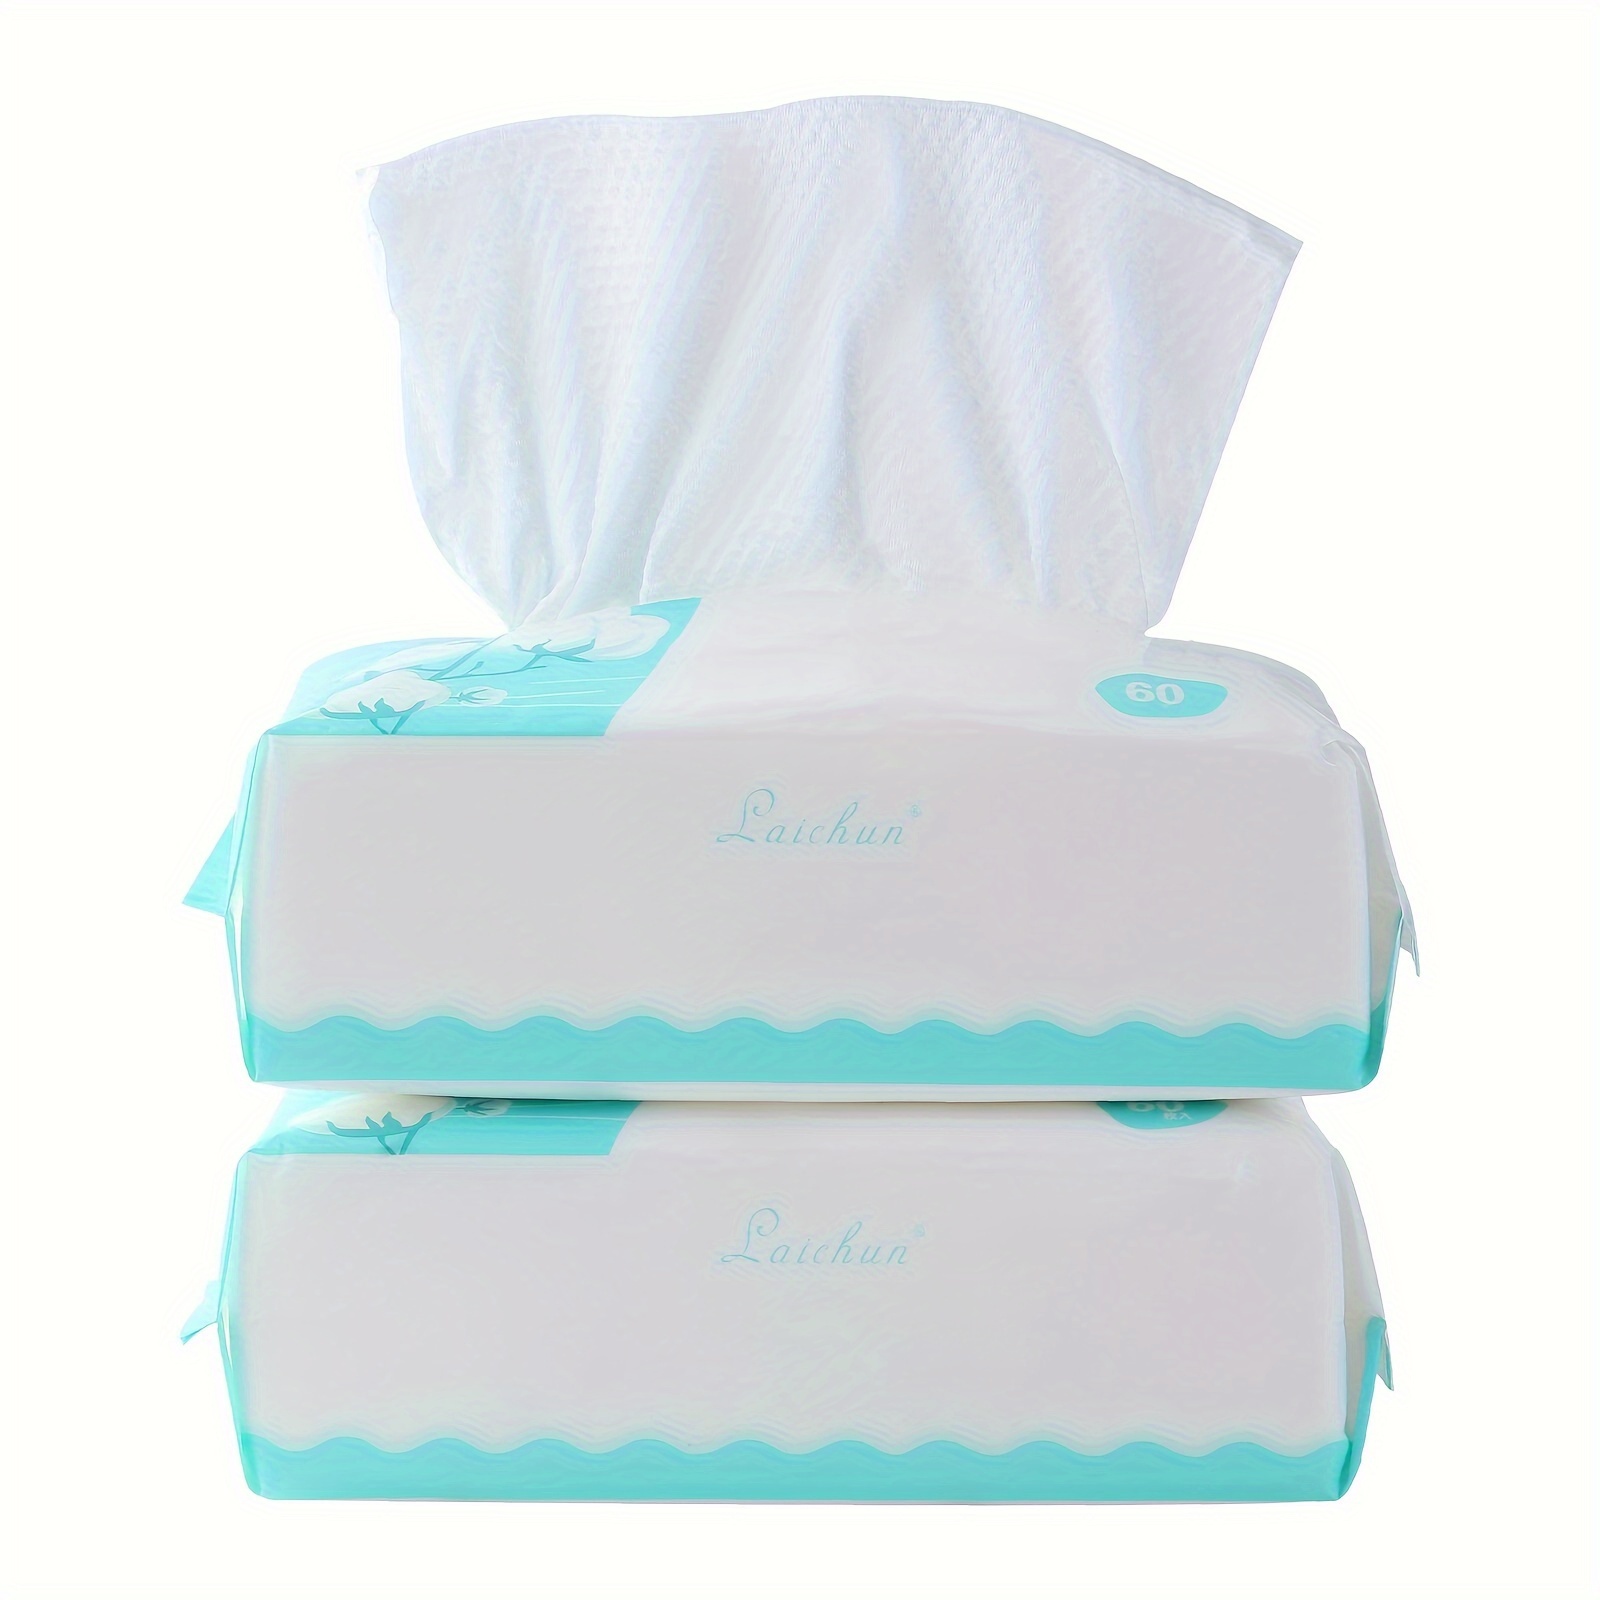 ARNOMED Toallas desechables estetica, 50 uds, toalla desechable para la  higiene corporal, toallitas secas bebe, toallitas adultos grandes,  toallitas